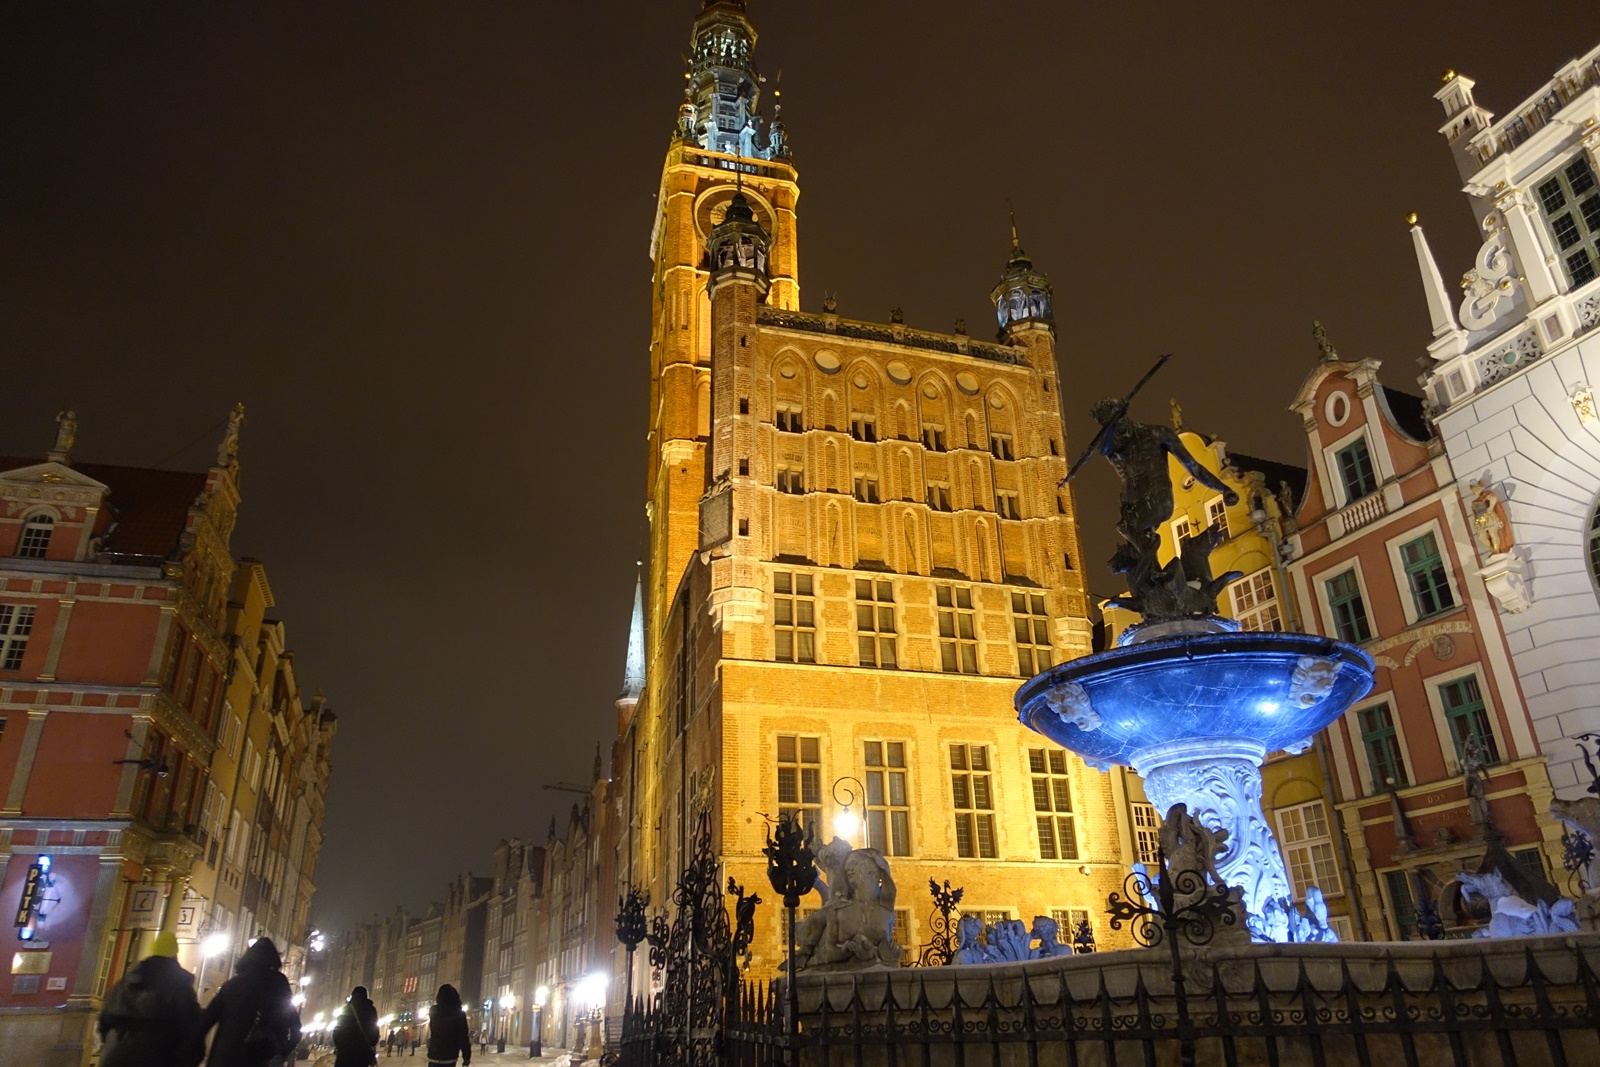 Zimowy Gdańsk nocą